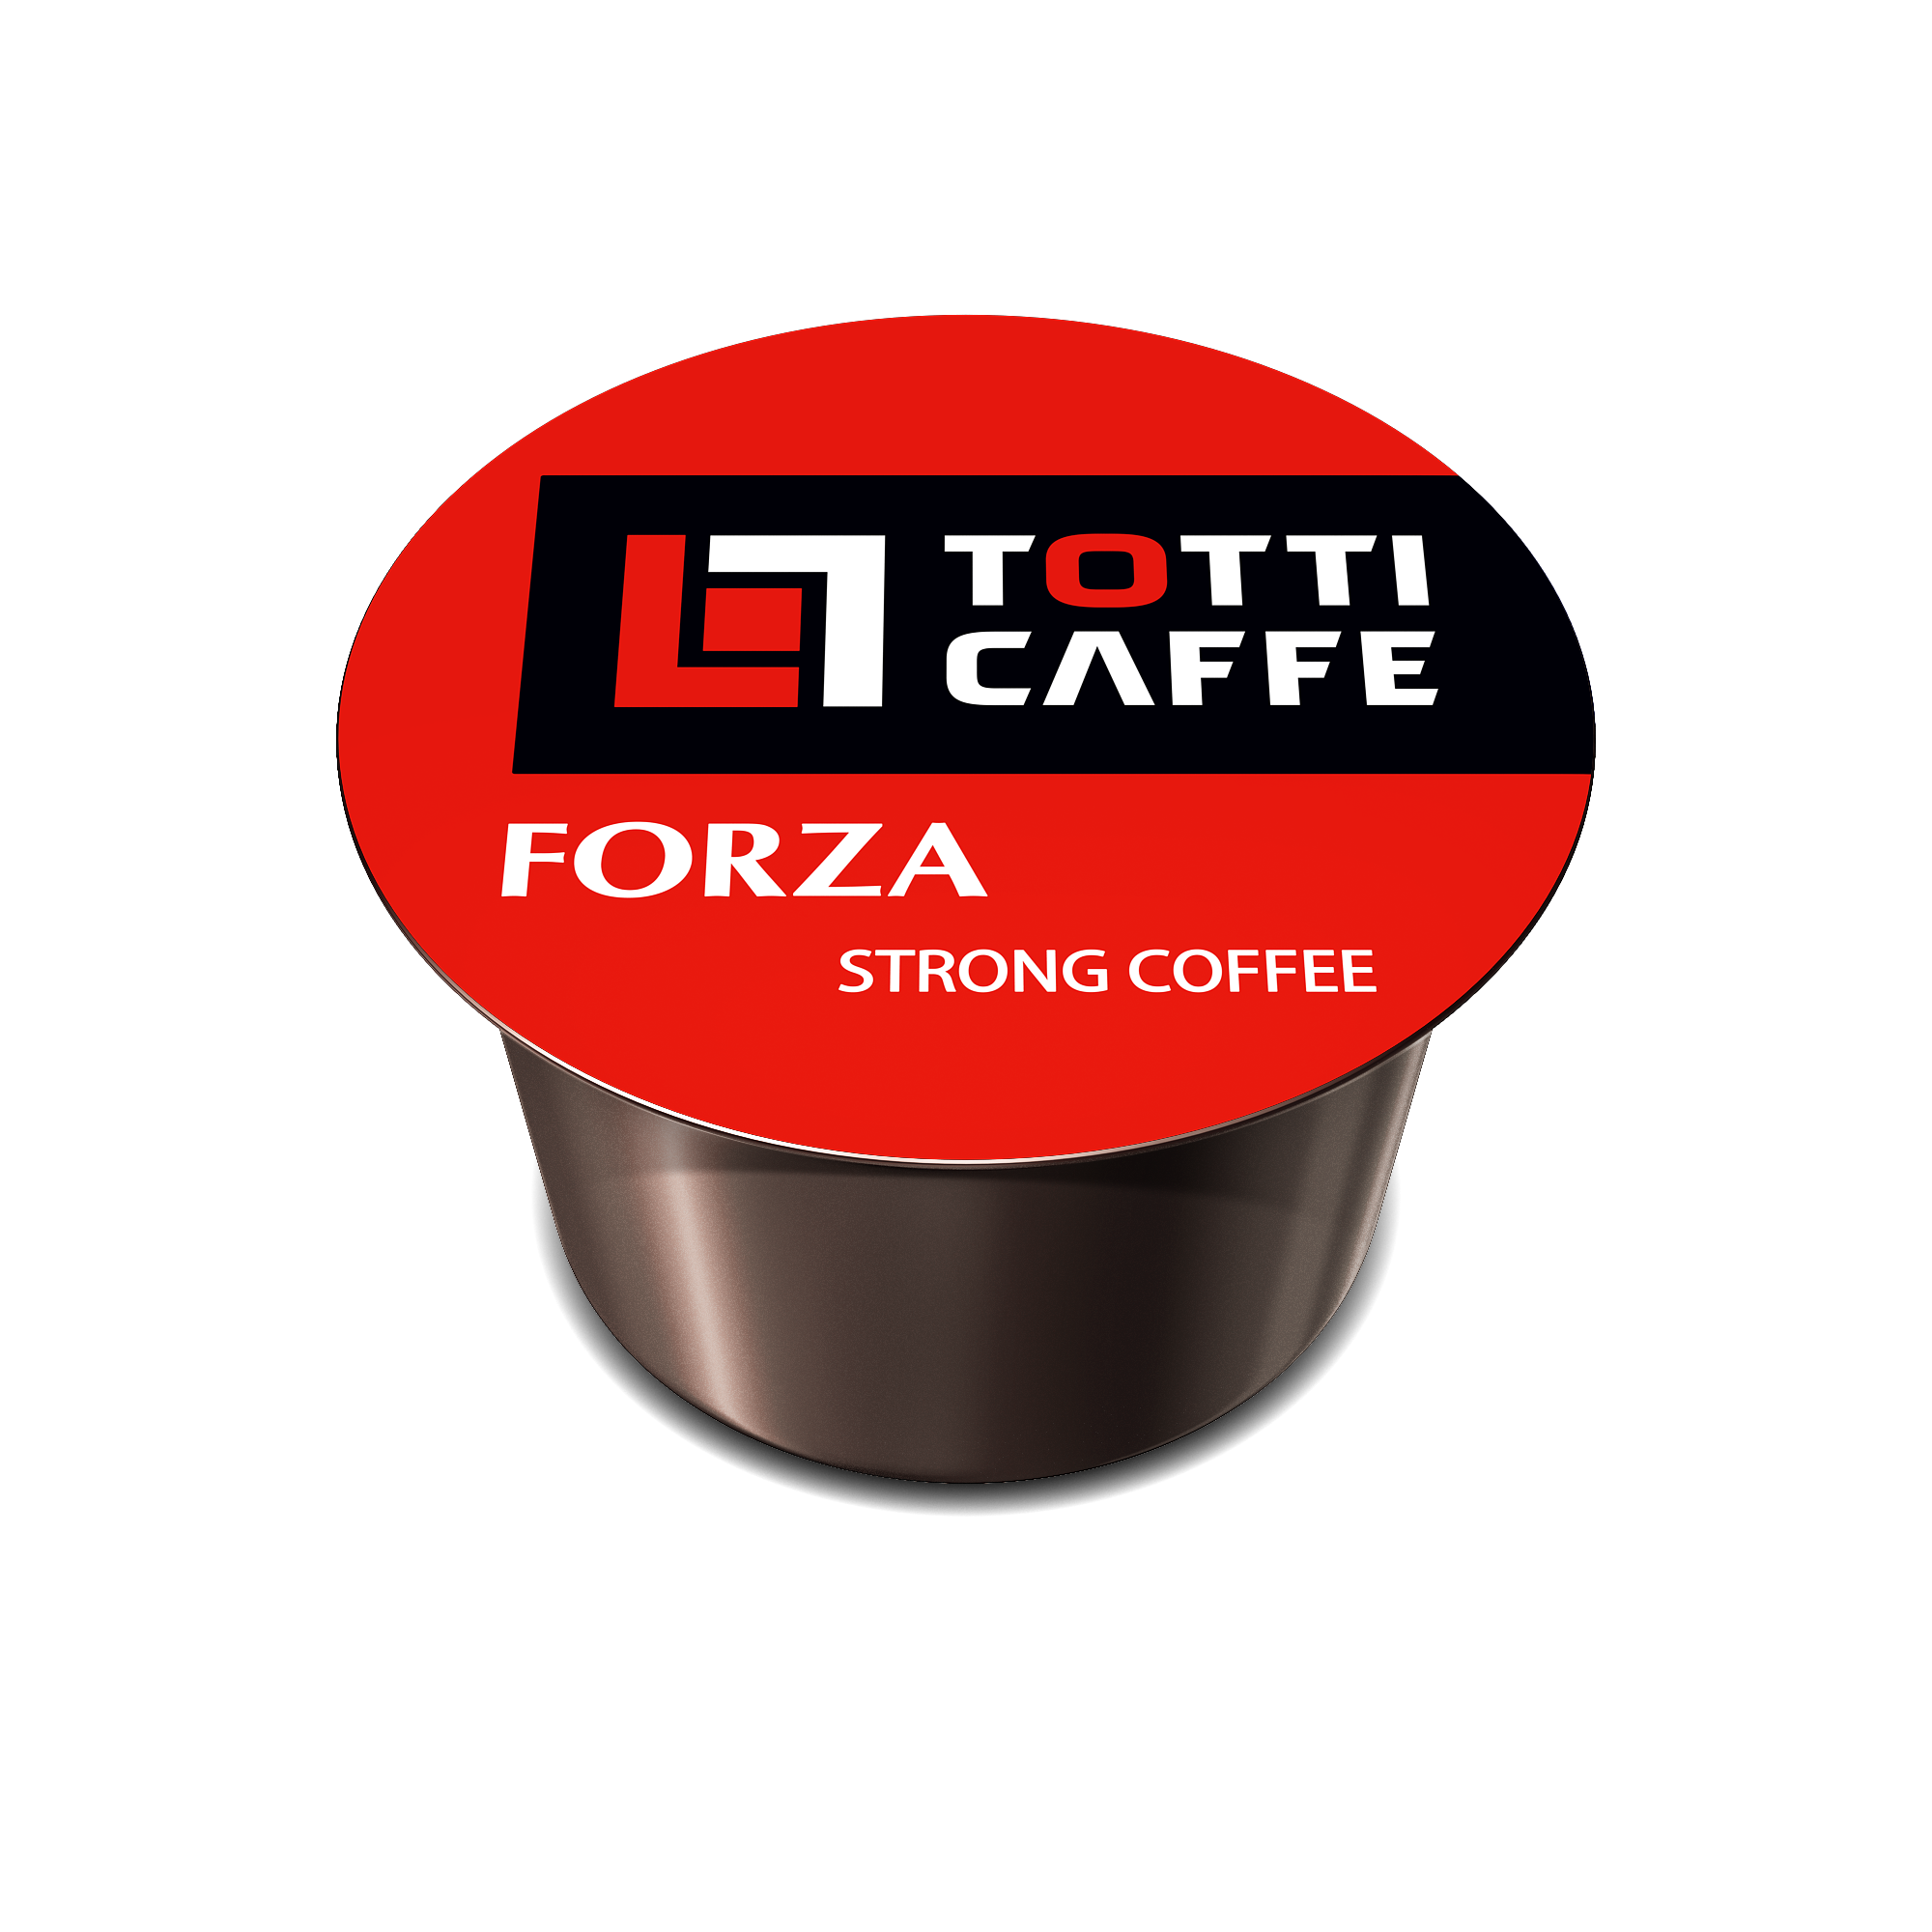 CAPSULE TOTTI CAFFE FORZA